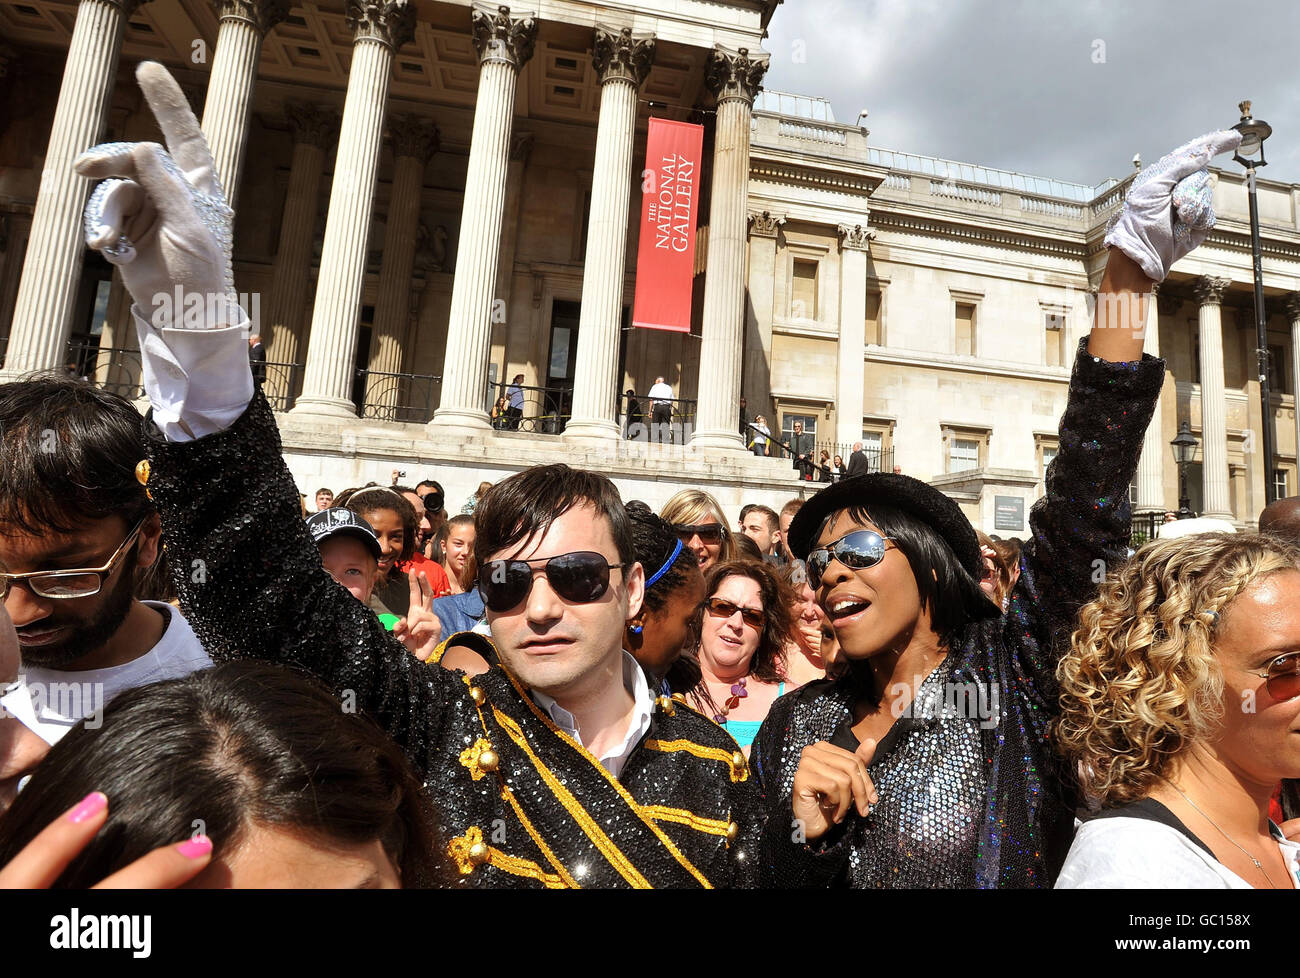 (De gauche à droite) Michael Lewis et Shimaya Jackson rejoignent des centaines de fans de Michael Jackson, après avoir dansé la routine de danse « Thriller », en hommage au chanteur américain qui est décédé récemment, à Trafalgar Square, dans le centre de Londres, cet après-midi. Banque D'Images